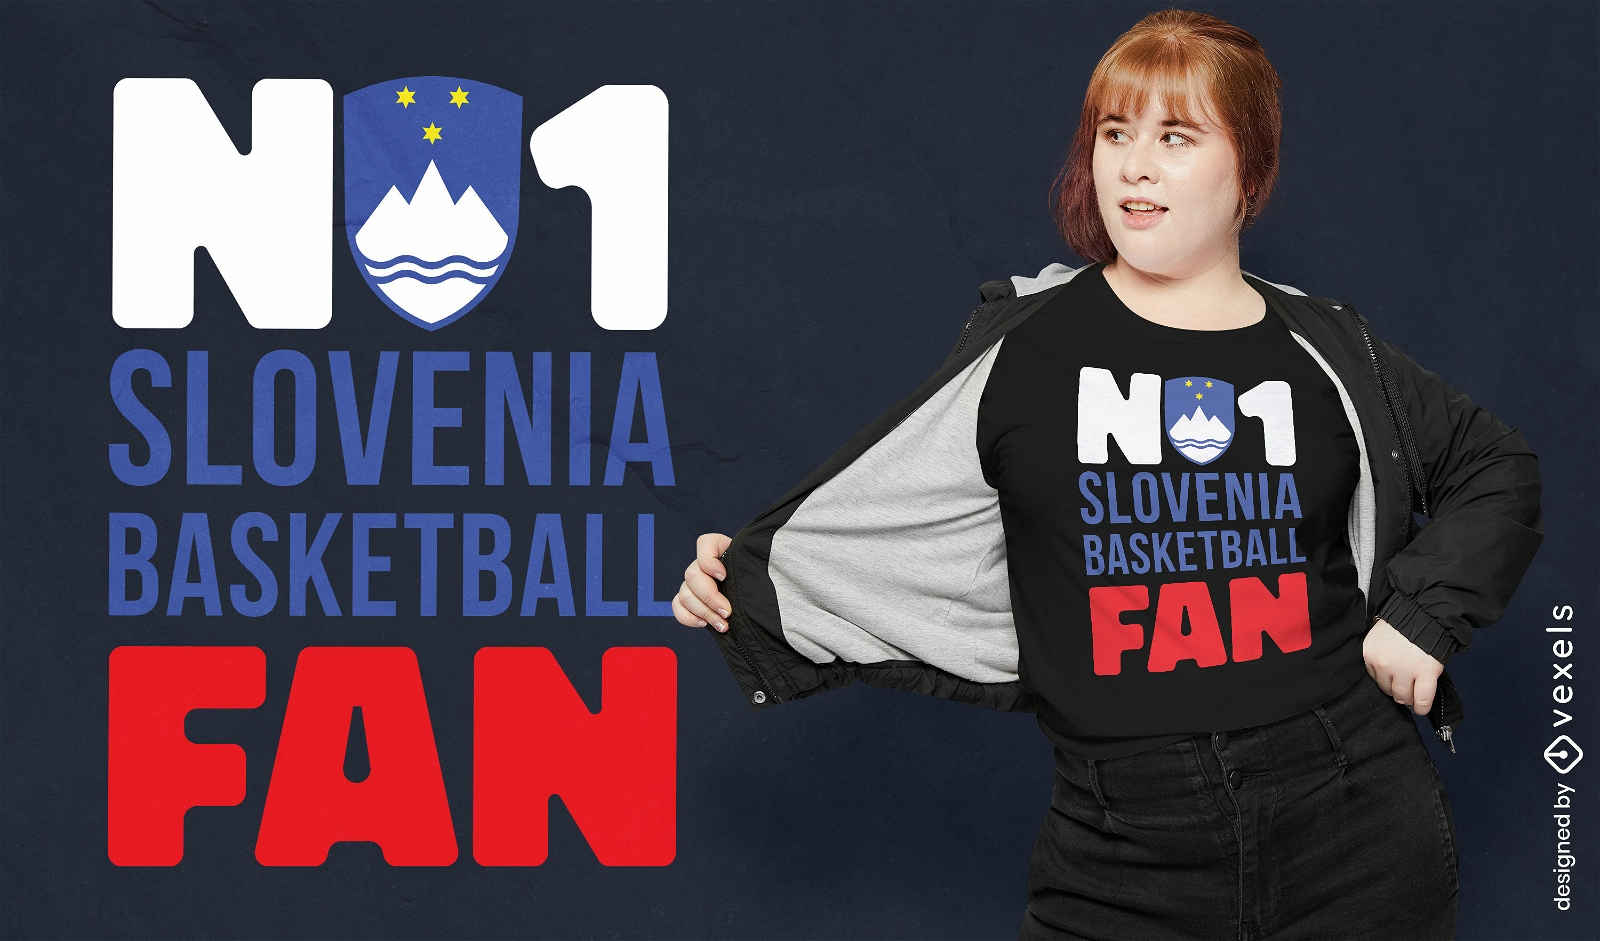 Slovenia basketball sport t-shirt design